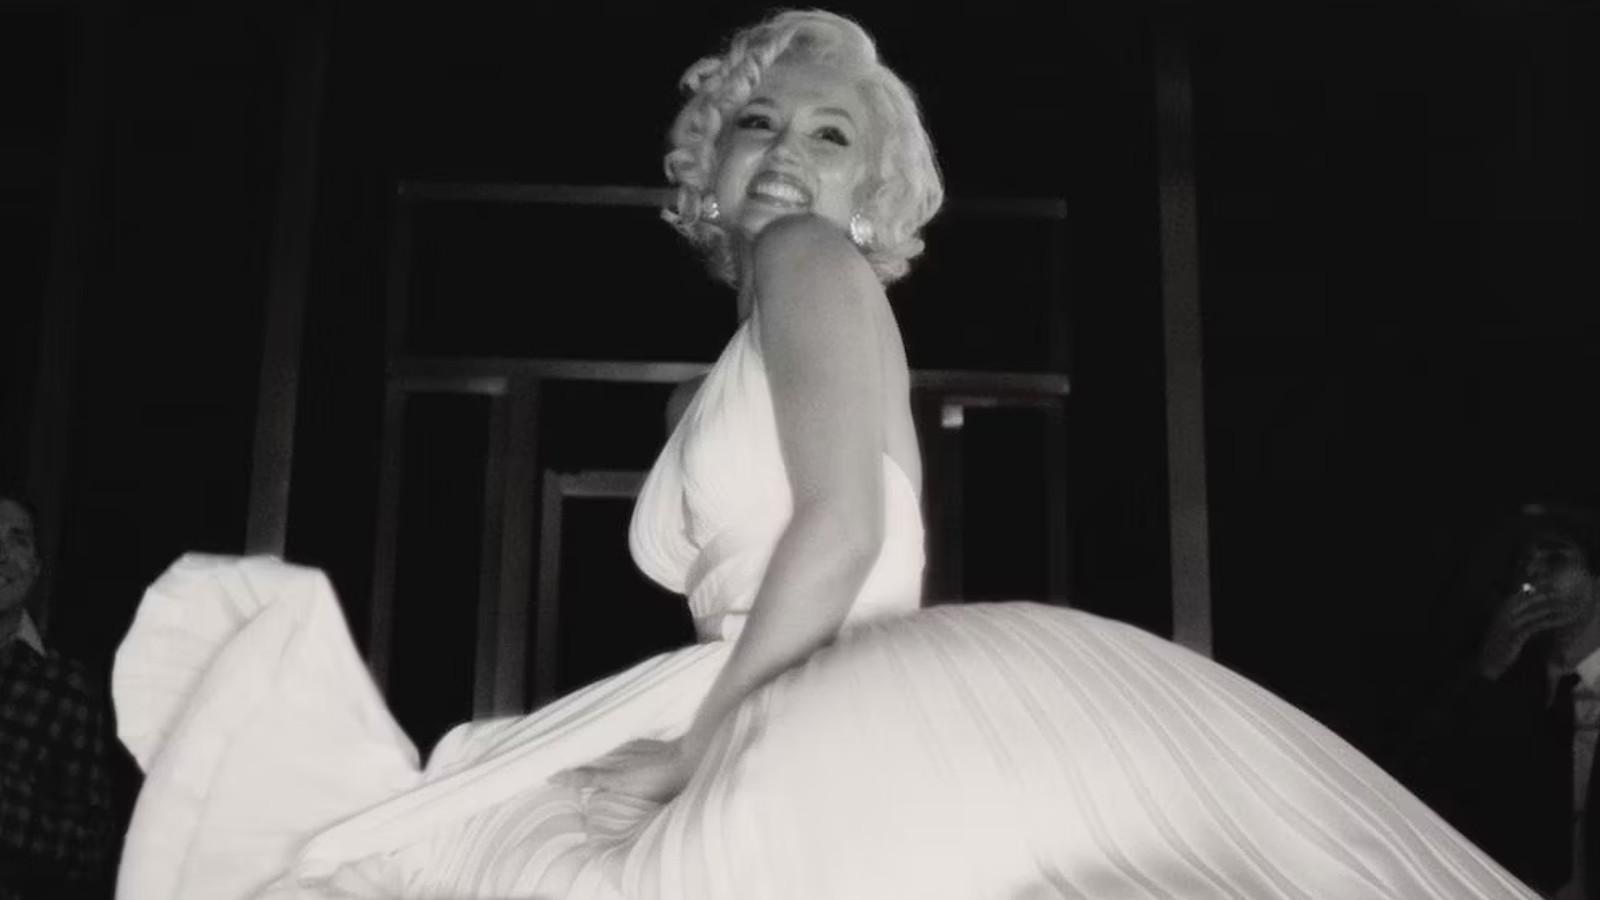 Ana de Armas as Marilyn Monroe in Blonde on Netflix